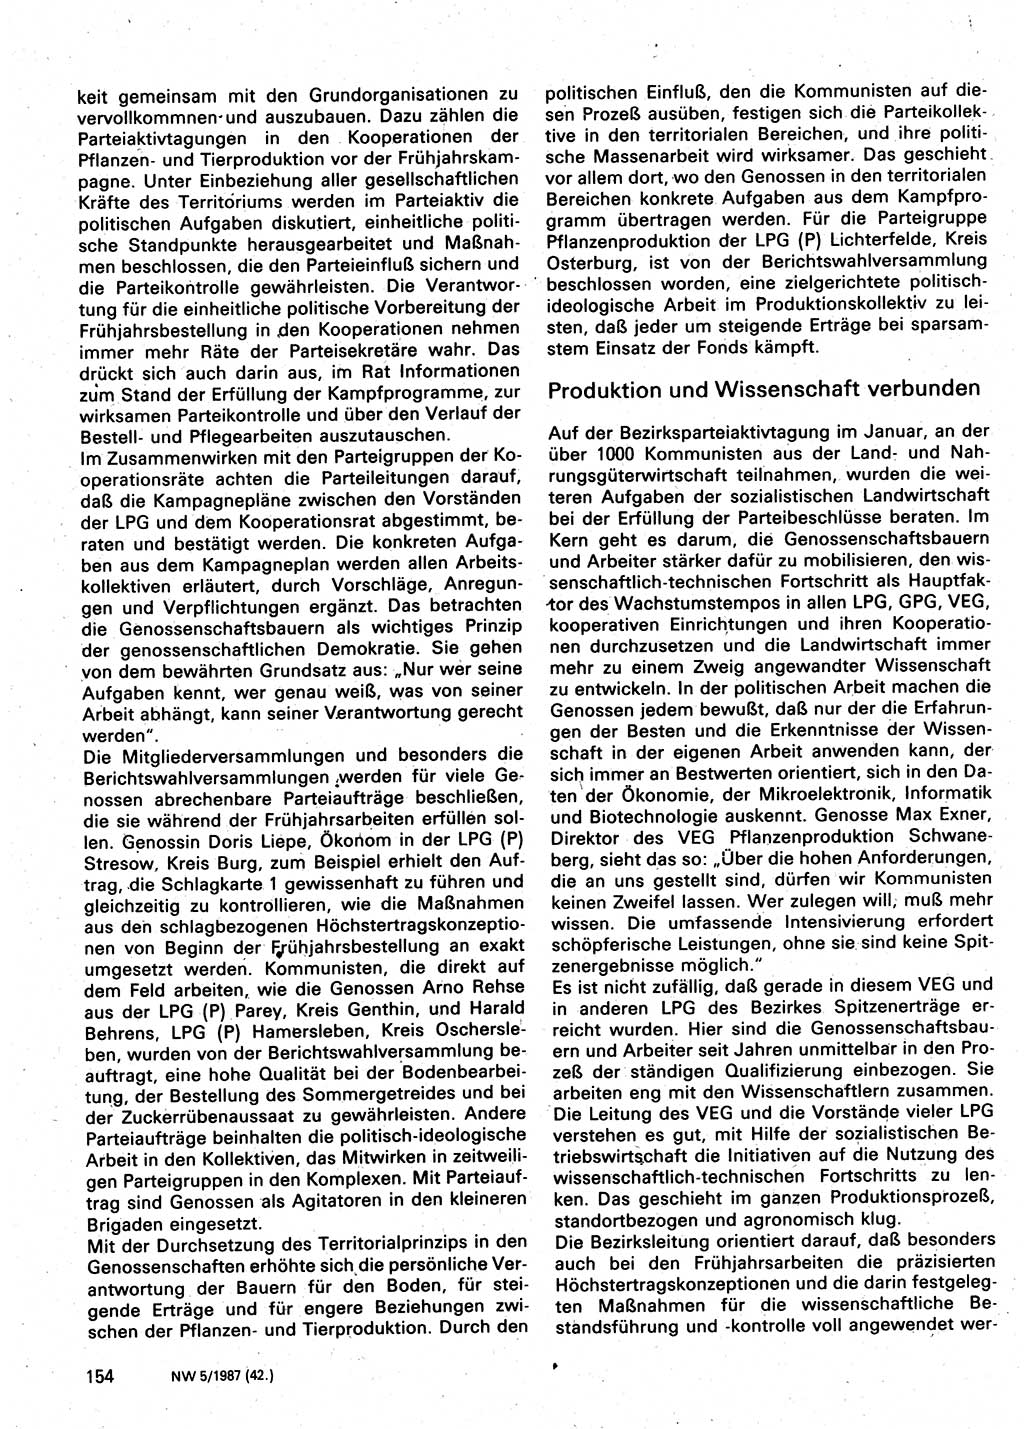 Neuer Weg (NW), Organ des Zentralkomitees (ZK) der SED (Sozialistische Einheitspartei Deutschlands) für Fragen des Parteilebens, 42. Jahrgang [Deutsche Demokratische Republik (DDR)] 1987, Seite 154 (NW ZK SED DDR 1987, S. 154)